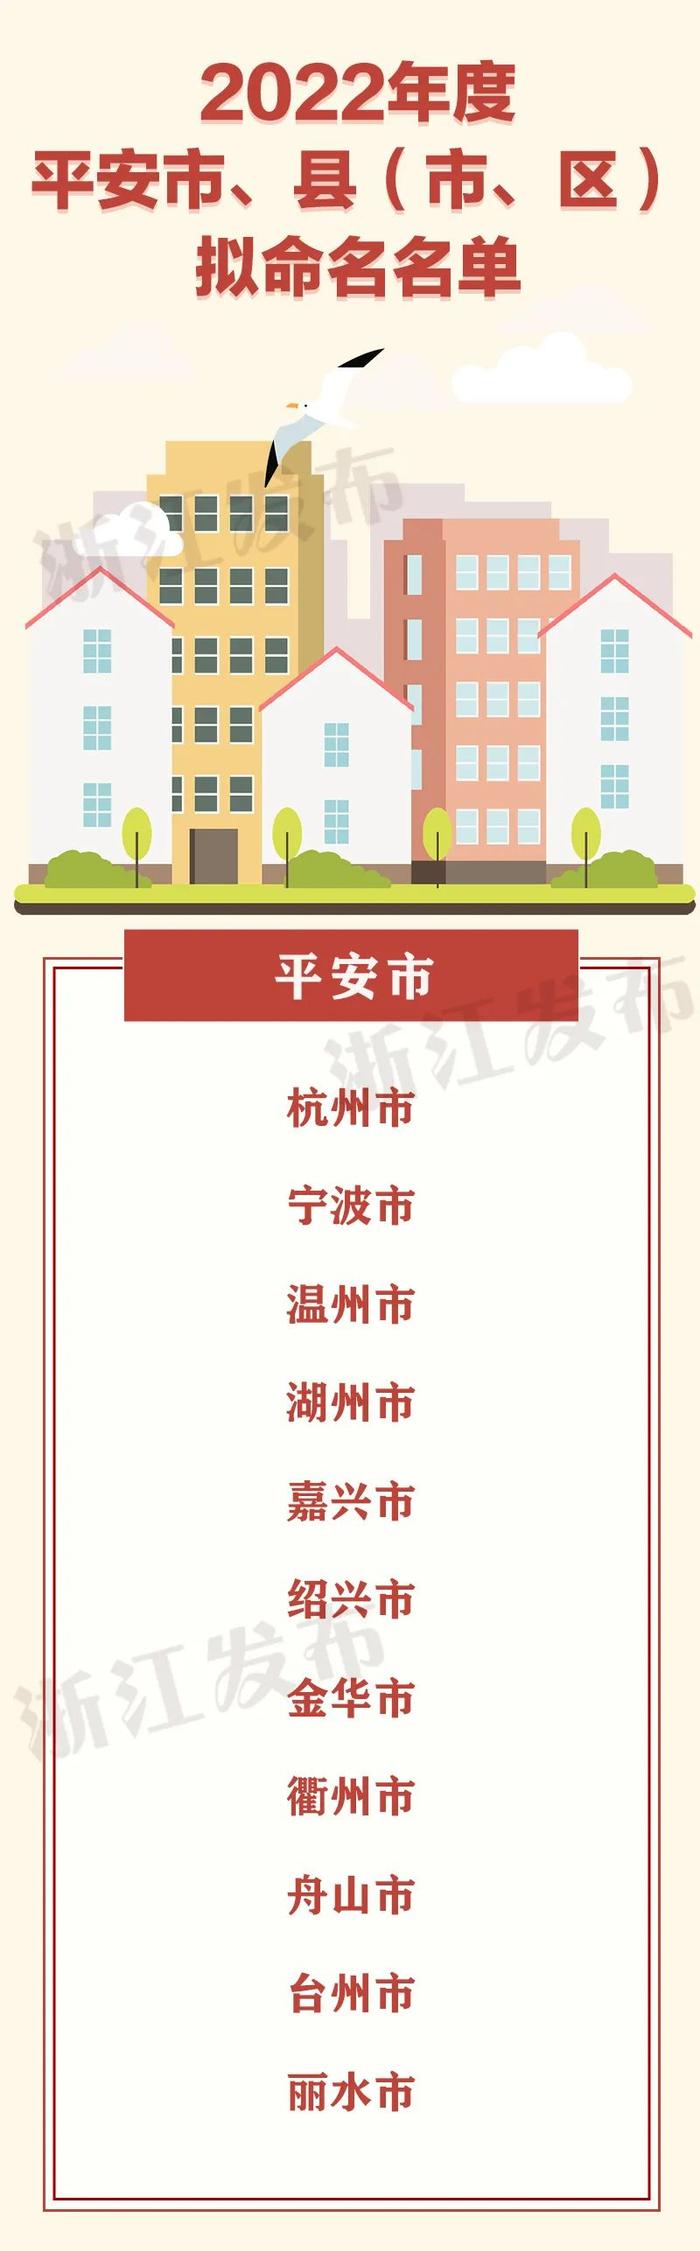 浙江省2022年度平安市、县（市、区）拟命名名单公示